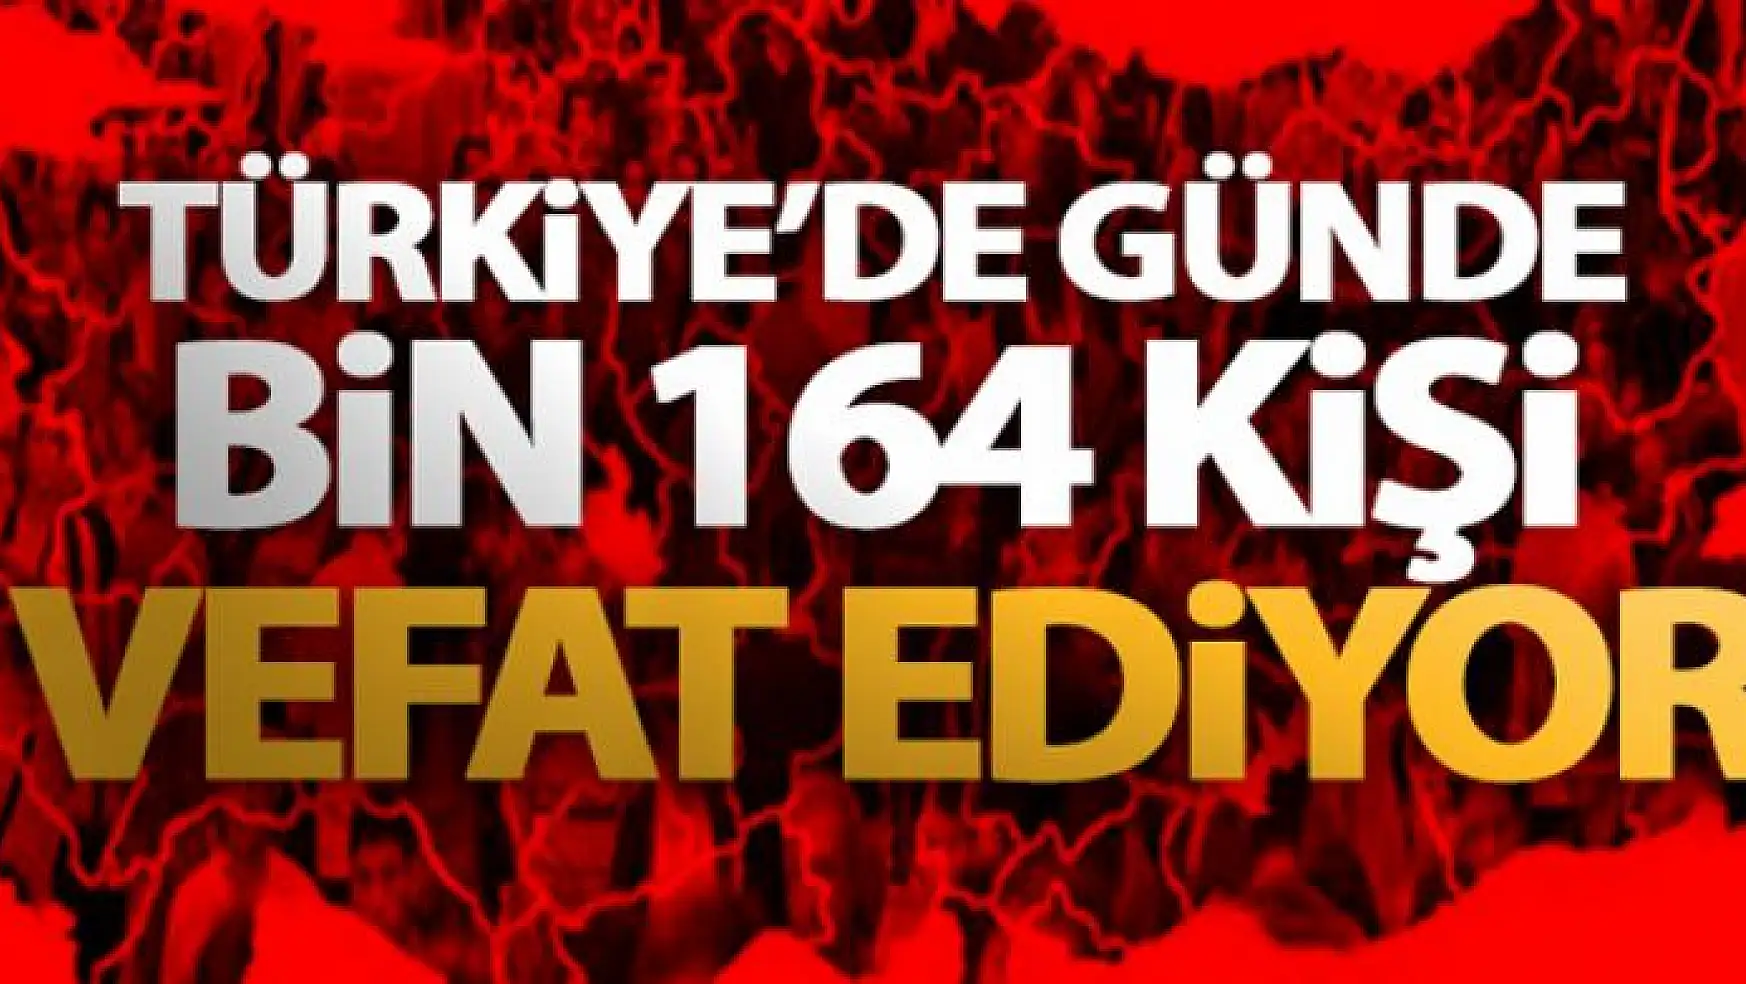 Türkiye'de günde bin 164 kişi vefat ediyor